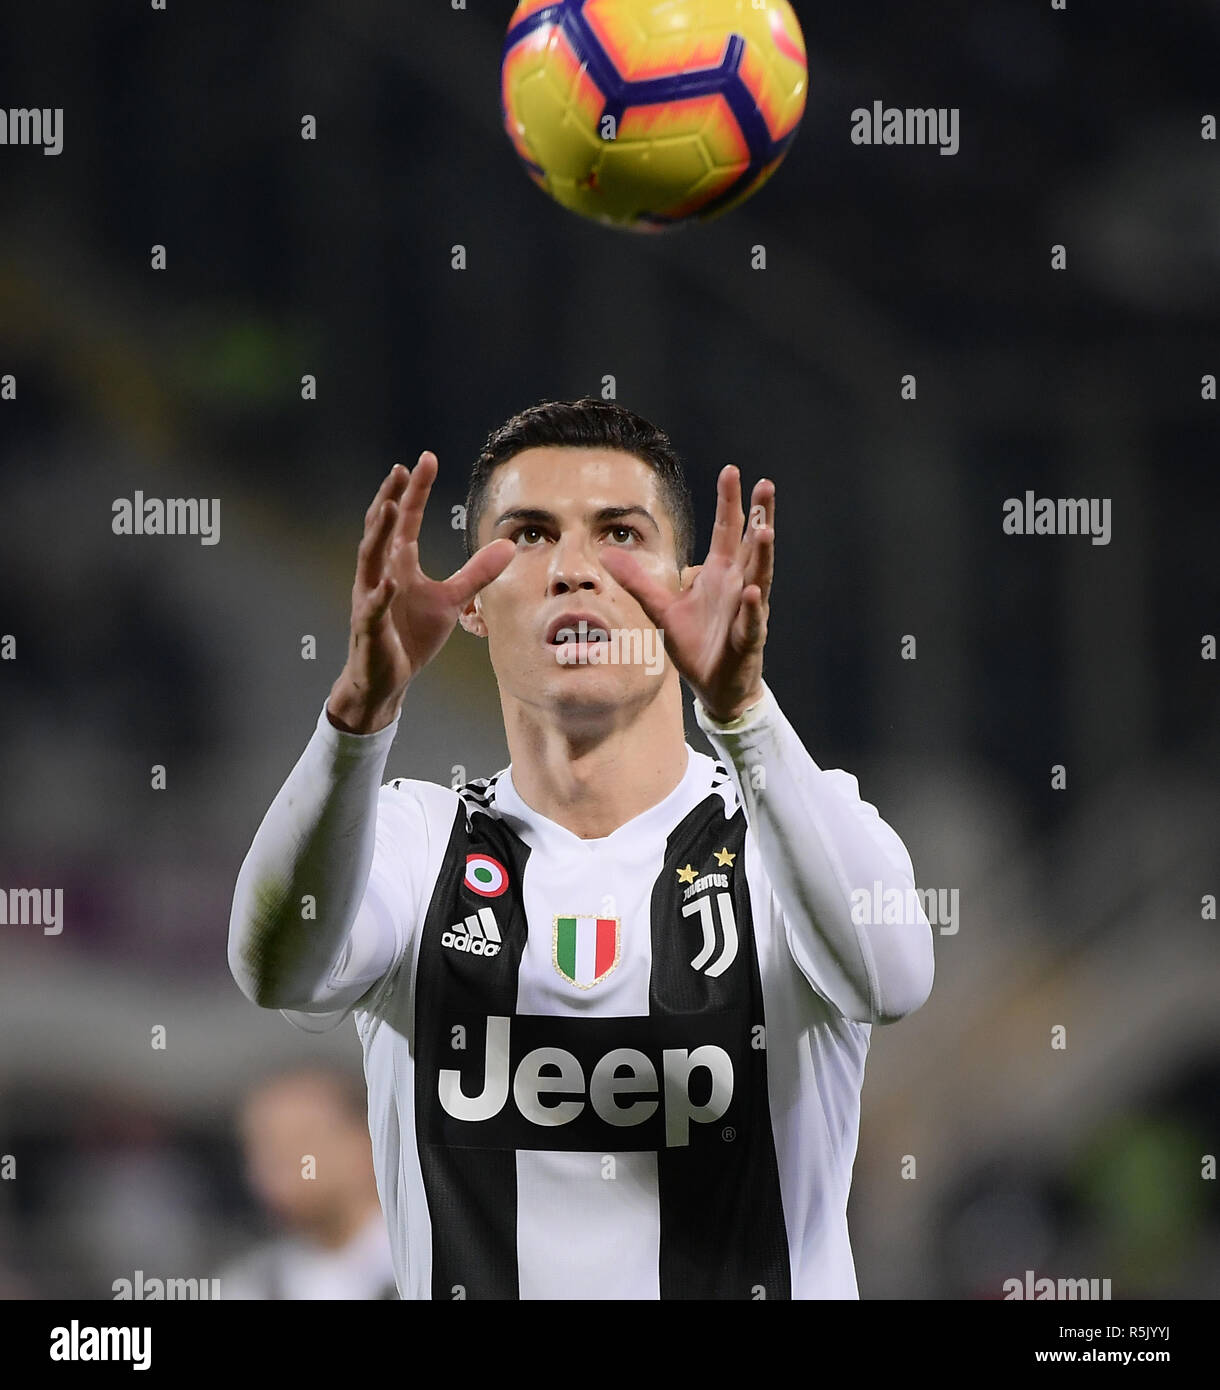 Firenze. 1 dicembre, 2018. La Juventus' Cristiano Ronaldo è in azione  durante la serie di una partita di calcio tra Juventus e Fiorentina in  Firenze, Italia, dic1, 2018. La Juve ha vinto